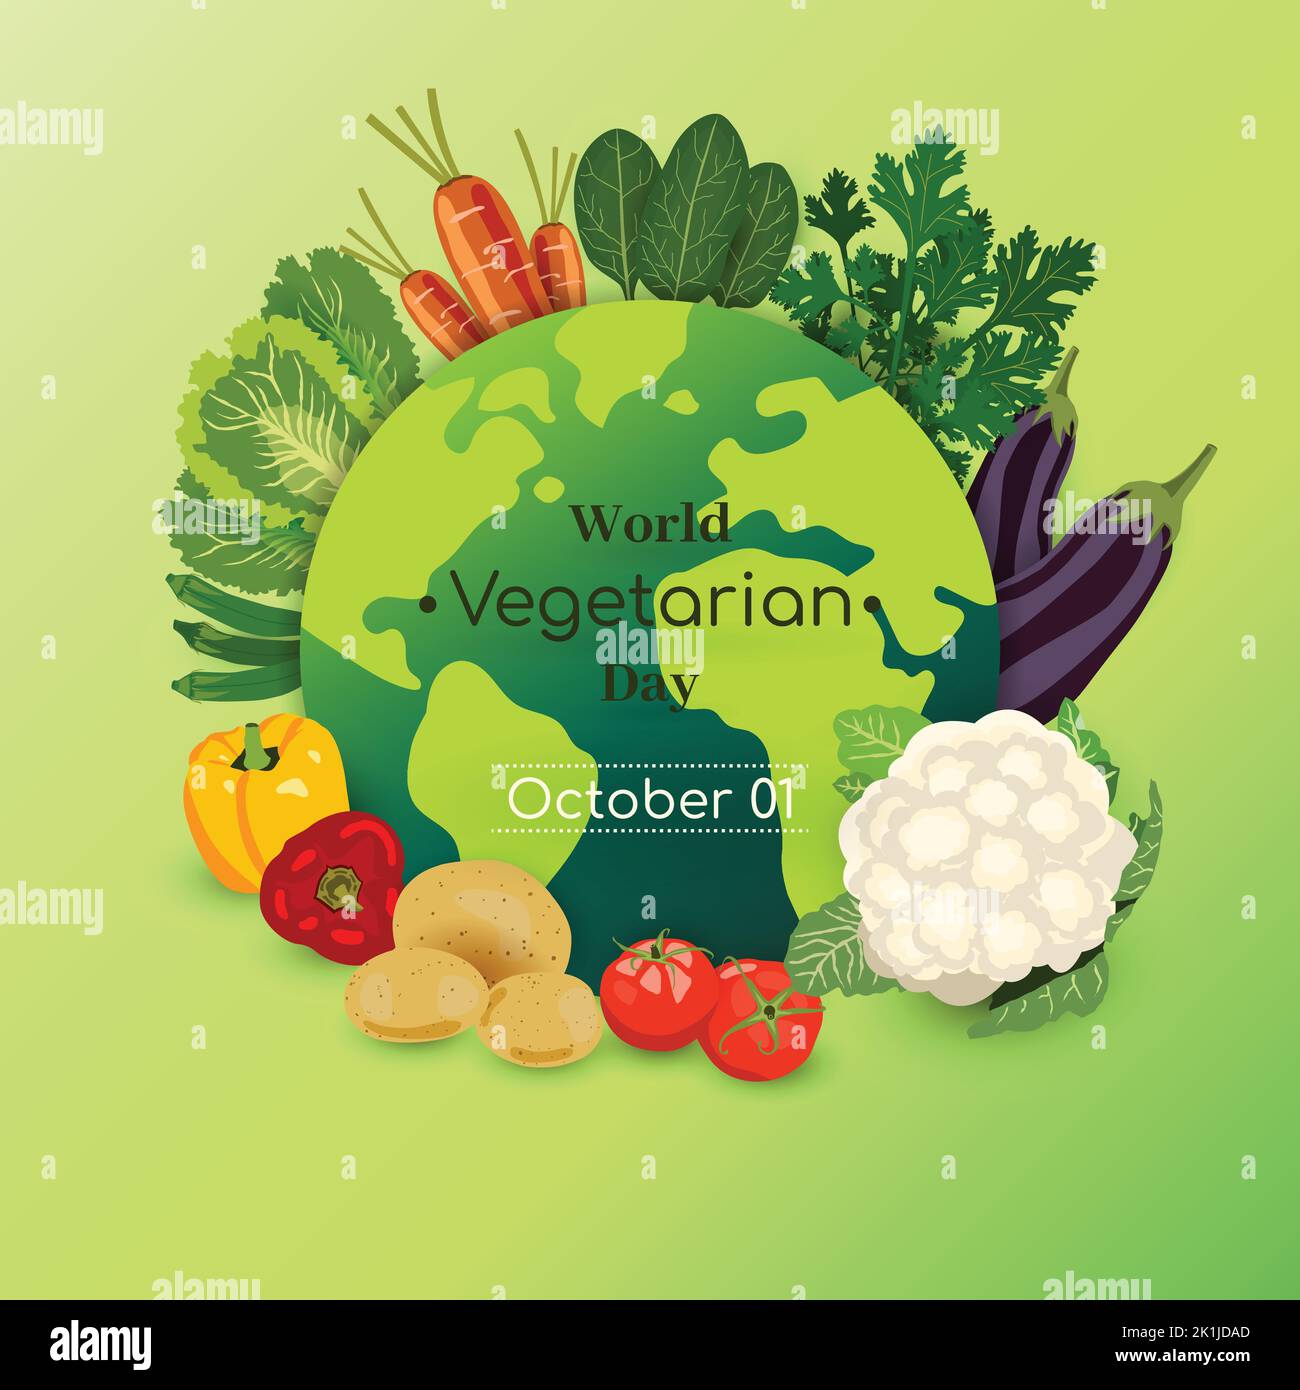 World Vegetarian Day Ottobre 01 Poster Vector Illustration. Biologico e verde Dieta alimentare sfondo design. Prodotto sano naturale Vegan Nutrizione gra Illustrazione Vettoriale